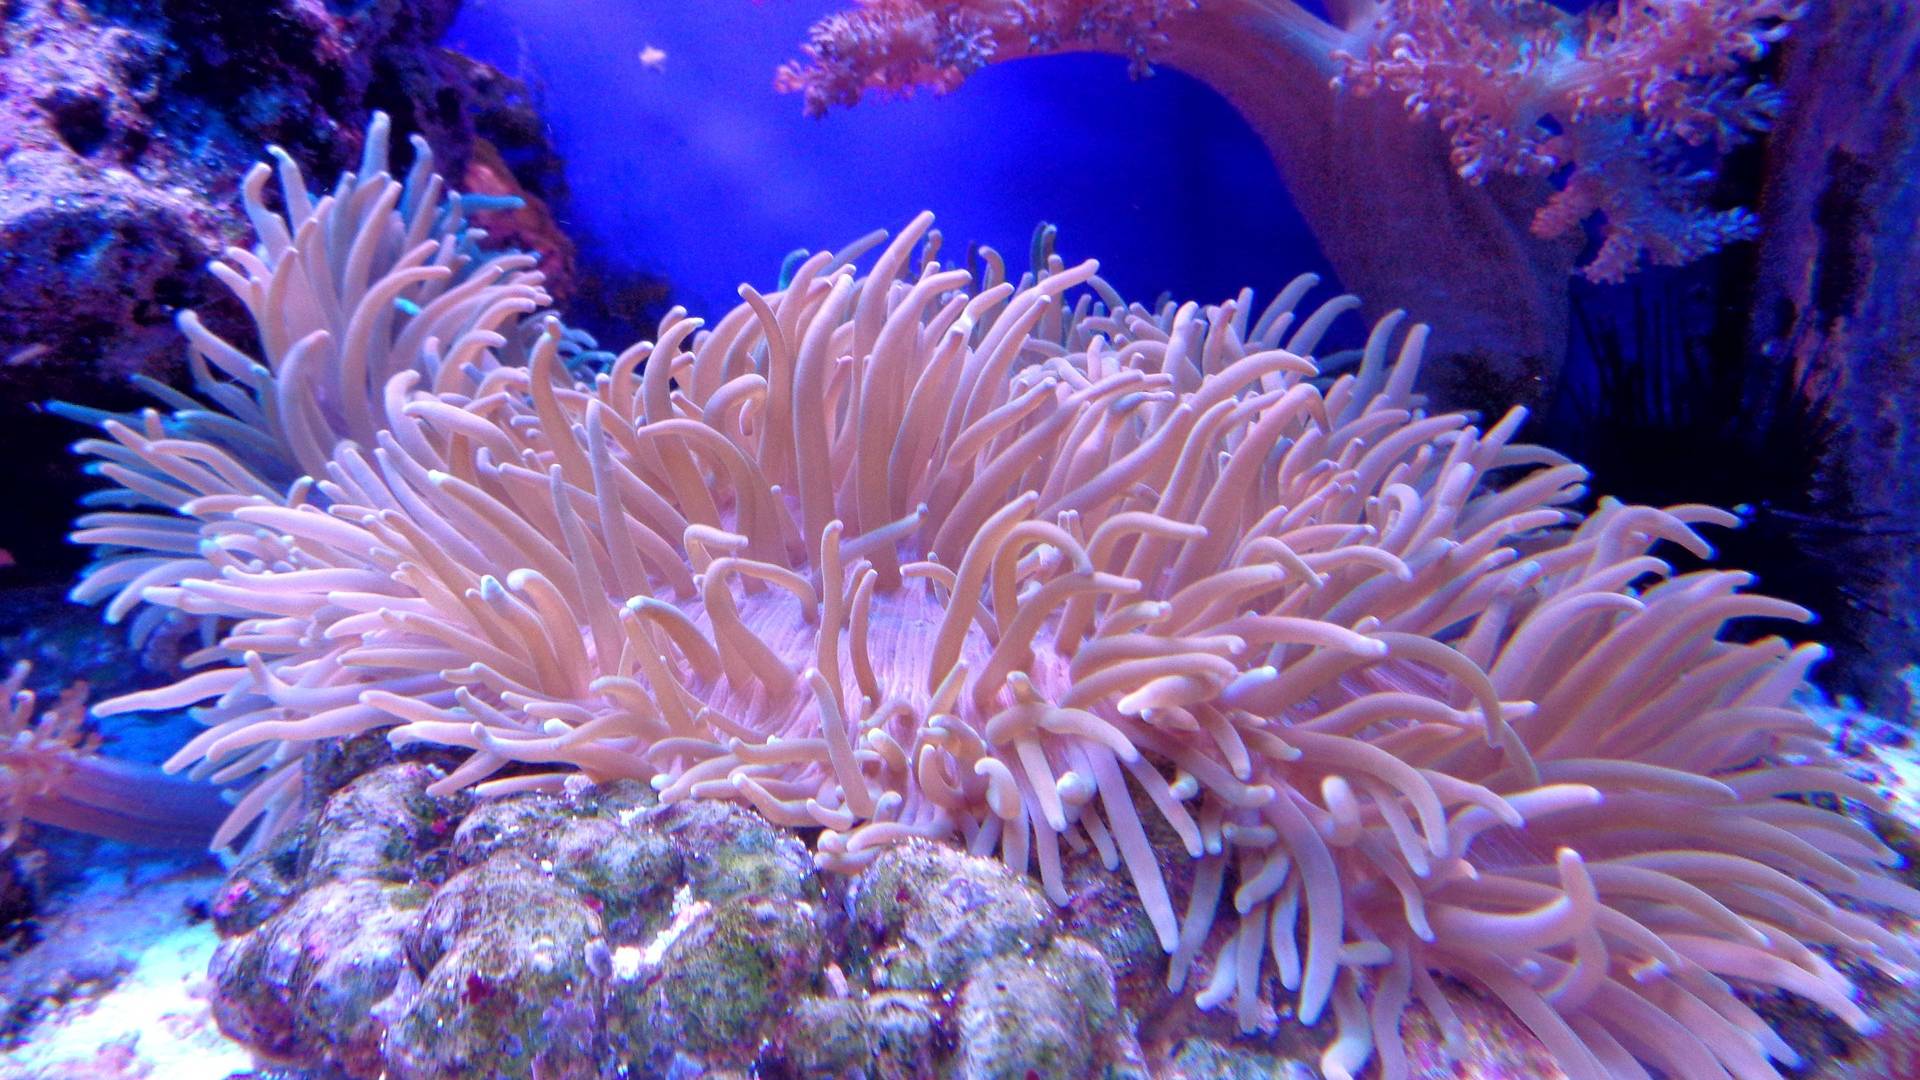 Hitzewellen vernichten die Korallen im Mittelmeer